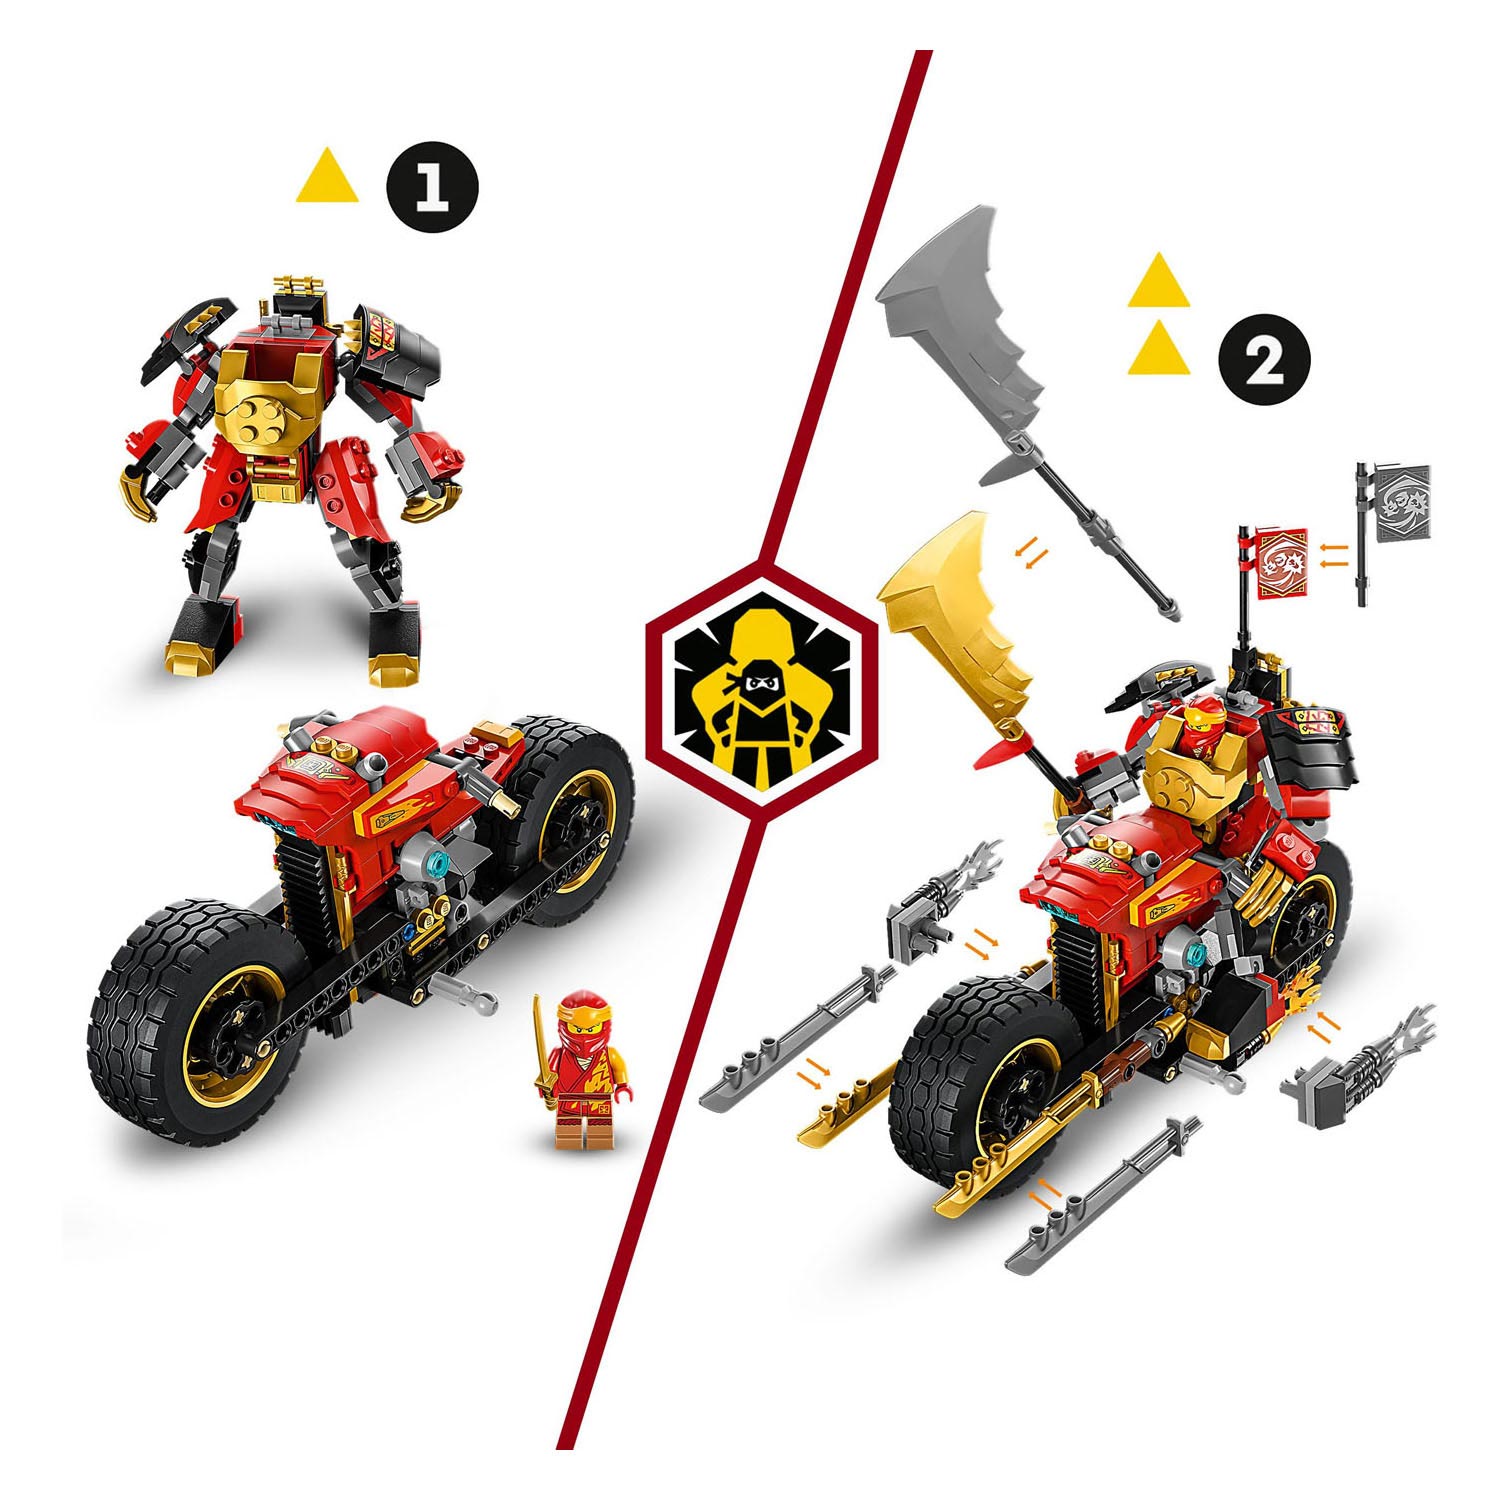 LEGO Ninjago 71783 Kais Mech Rider EVO